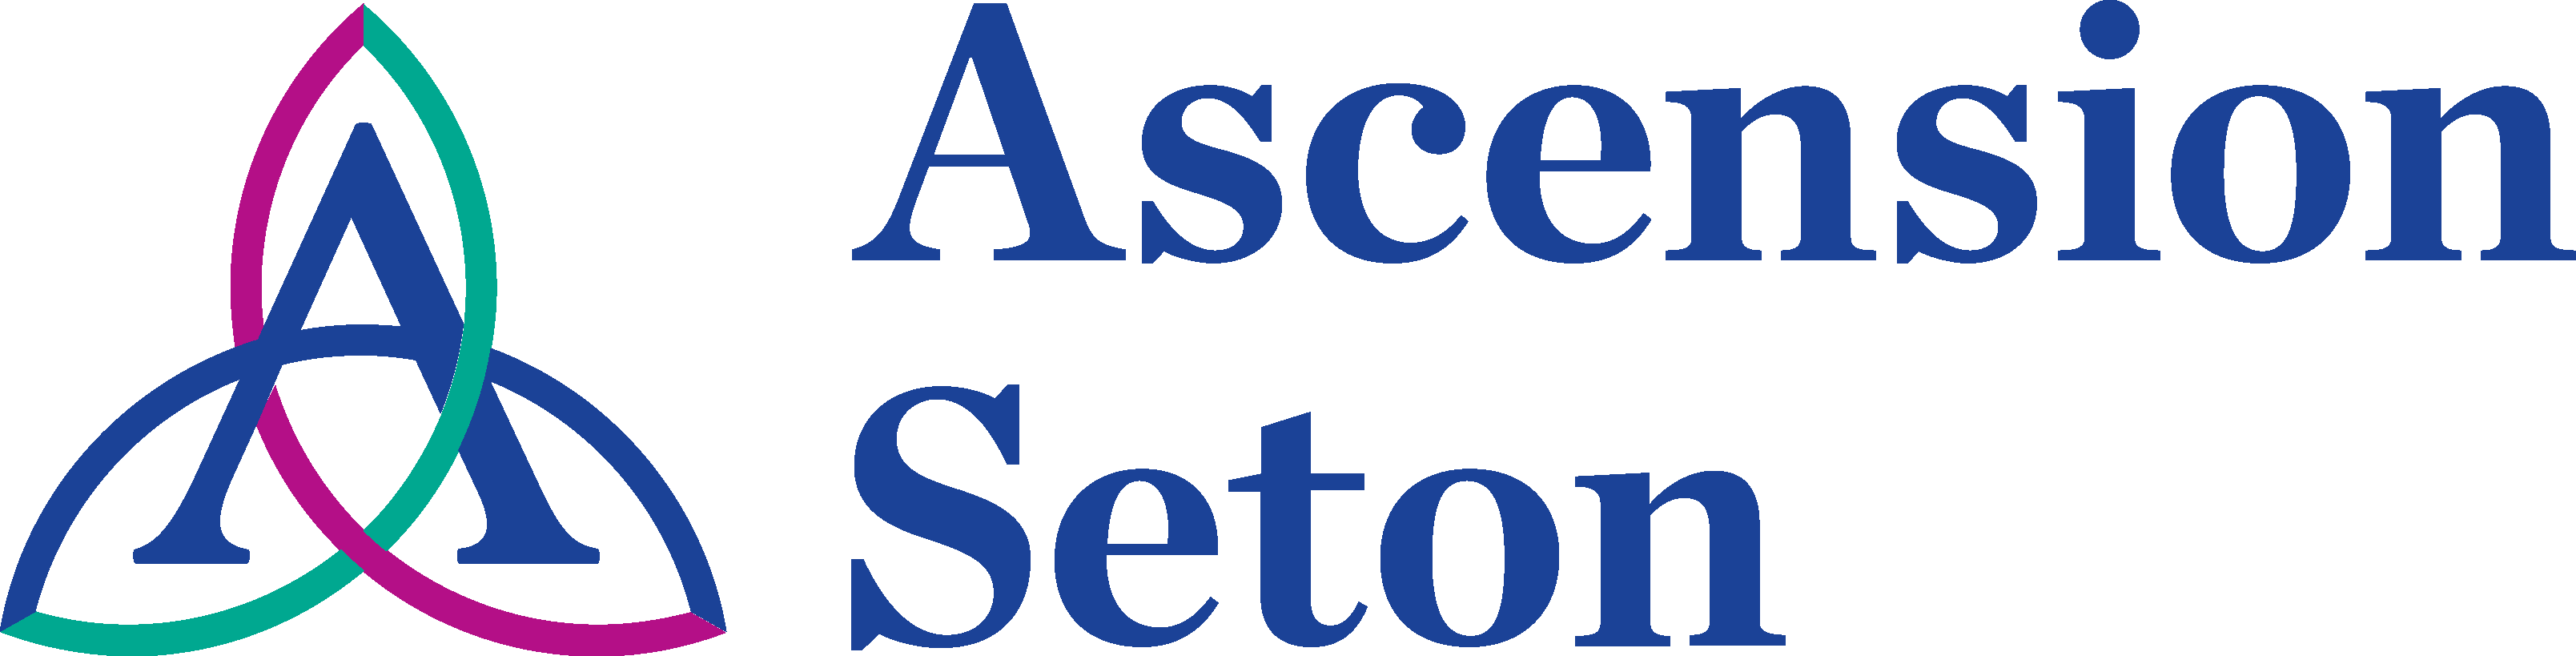 Ascension Seton Logo